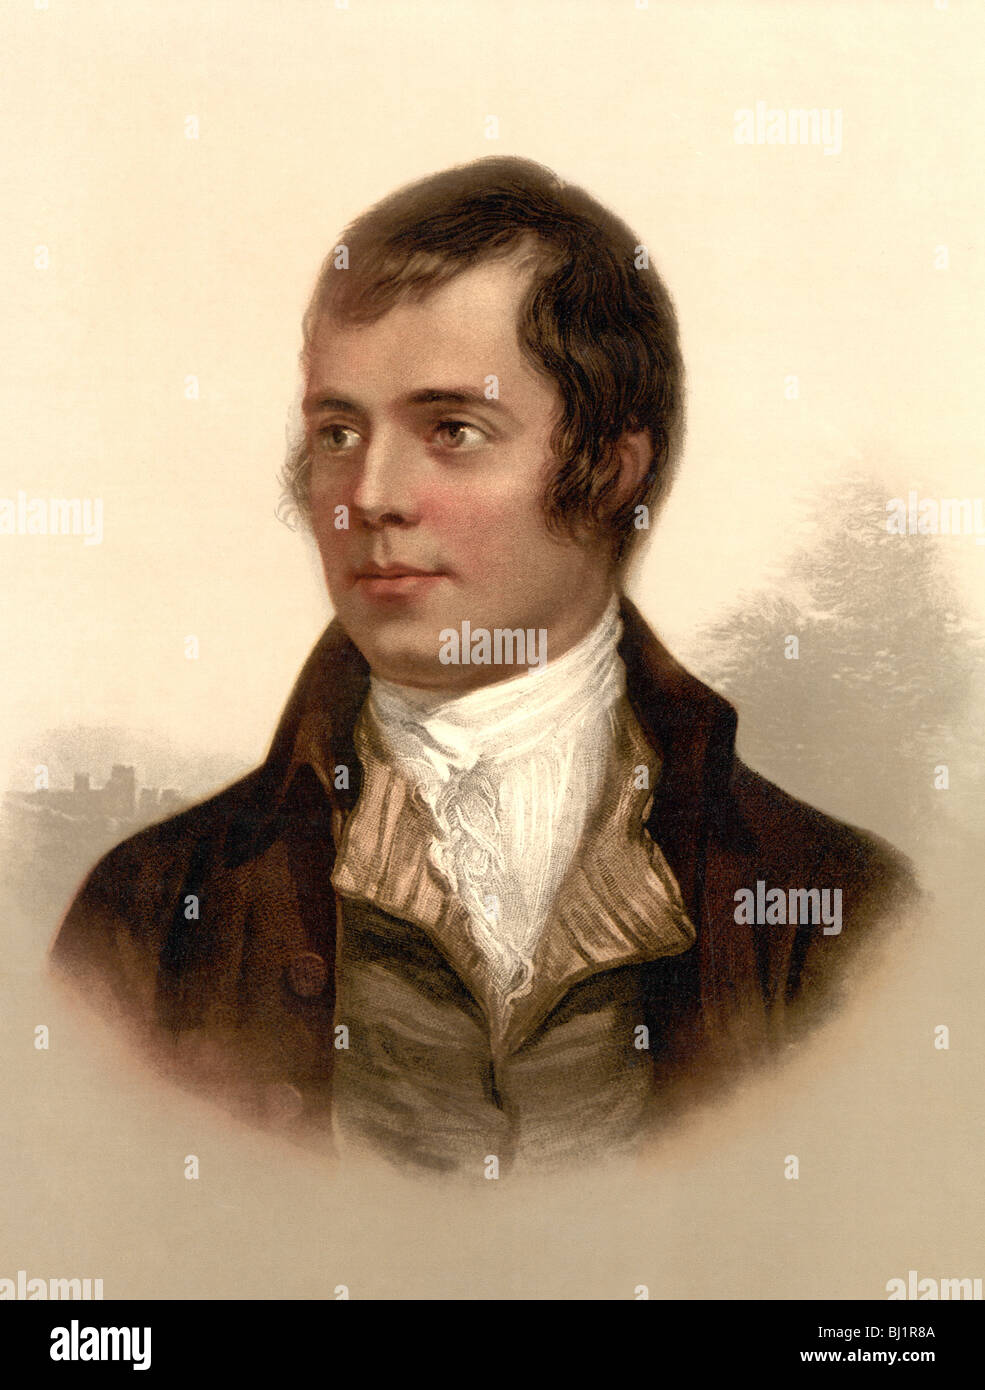 Retrato c1890s del famoso poeta escocés Robert Burns (1759 - 1796), también conocida como Rabbie Burns y el "bardo de Ayrshire'. Foto de stock